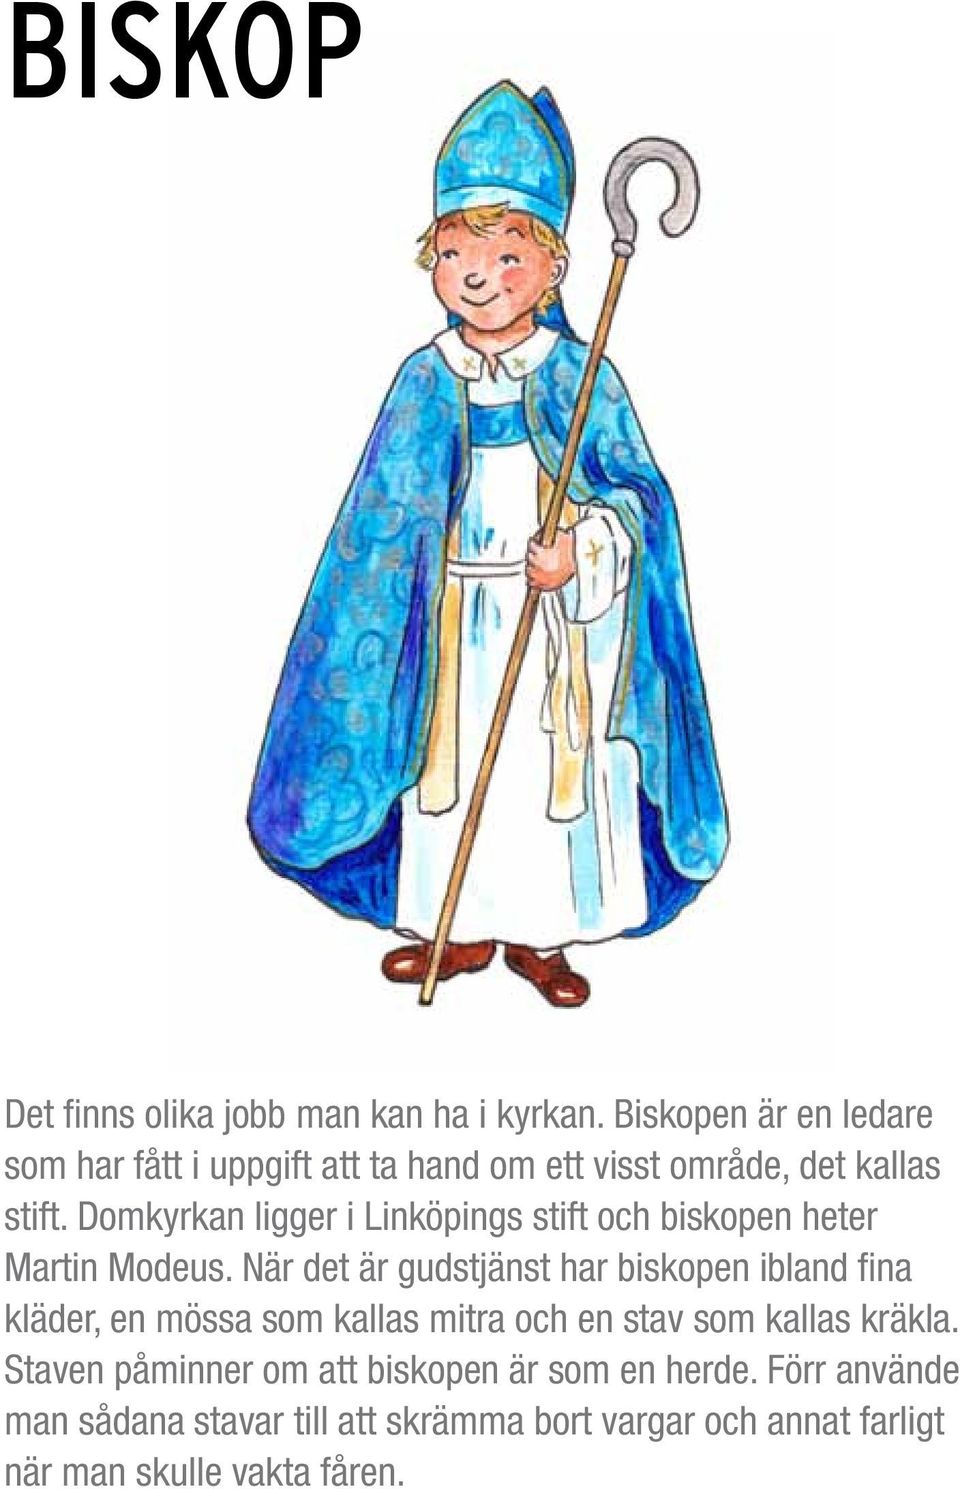 Domkyrkan ligger i Linköpings stift och biskopen heter Martin Modeus.